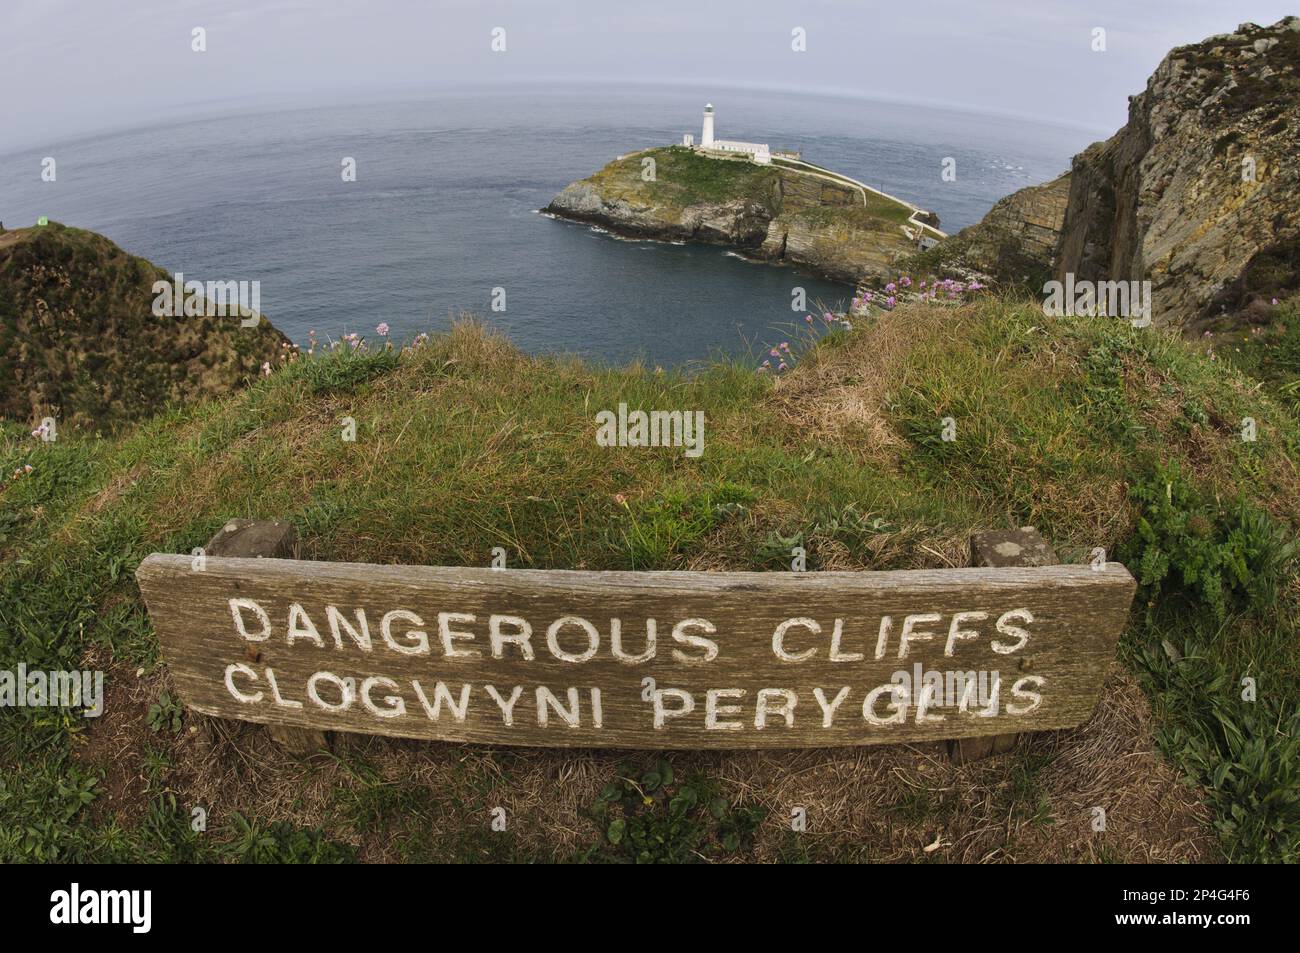 Dangerous Cliffs, RSPB Reserve, Anglesey, Galles, giugno, Clogwyni Peryglus, segno bilingue sulla cima della scogliera, con faro sullo sfondo, Stack Sud Foto Stock